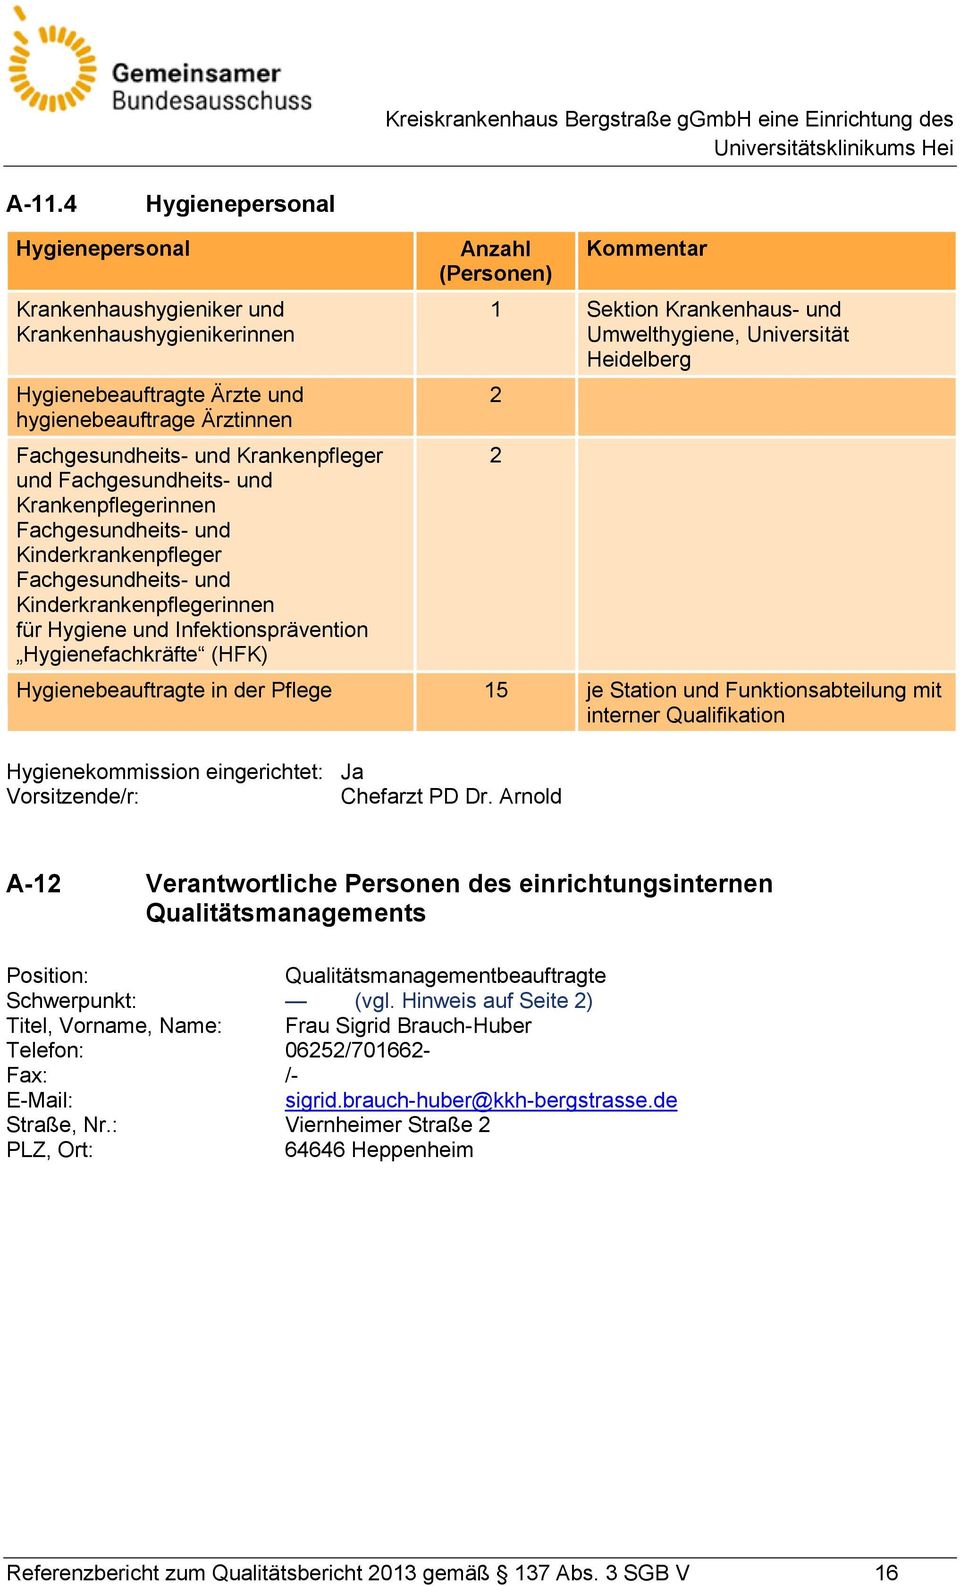 (Personen) Kommentar 1 Sektion Krankenhaus- und Umwelthygiene, Universität Heidelberg Hygienebeauftragte in der Pflege 15 je Station und Funktionsabteilung mit interner Qualifikation